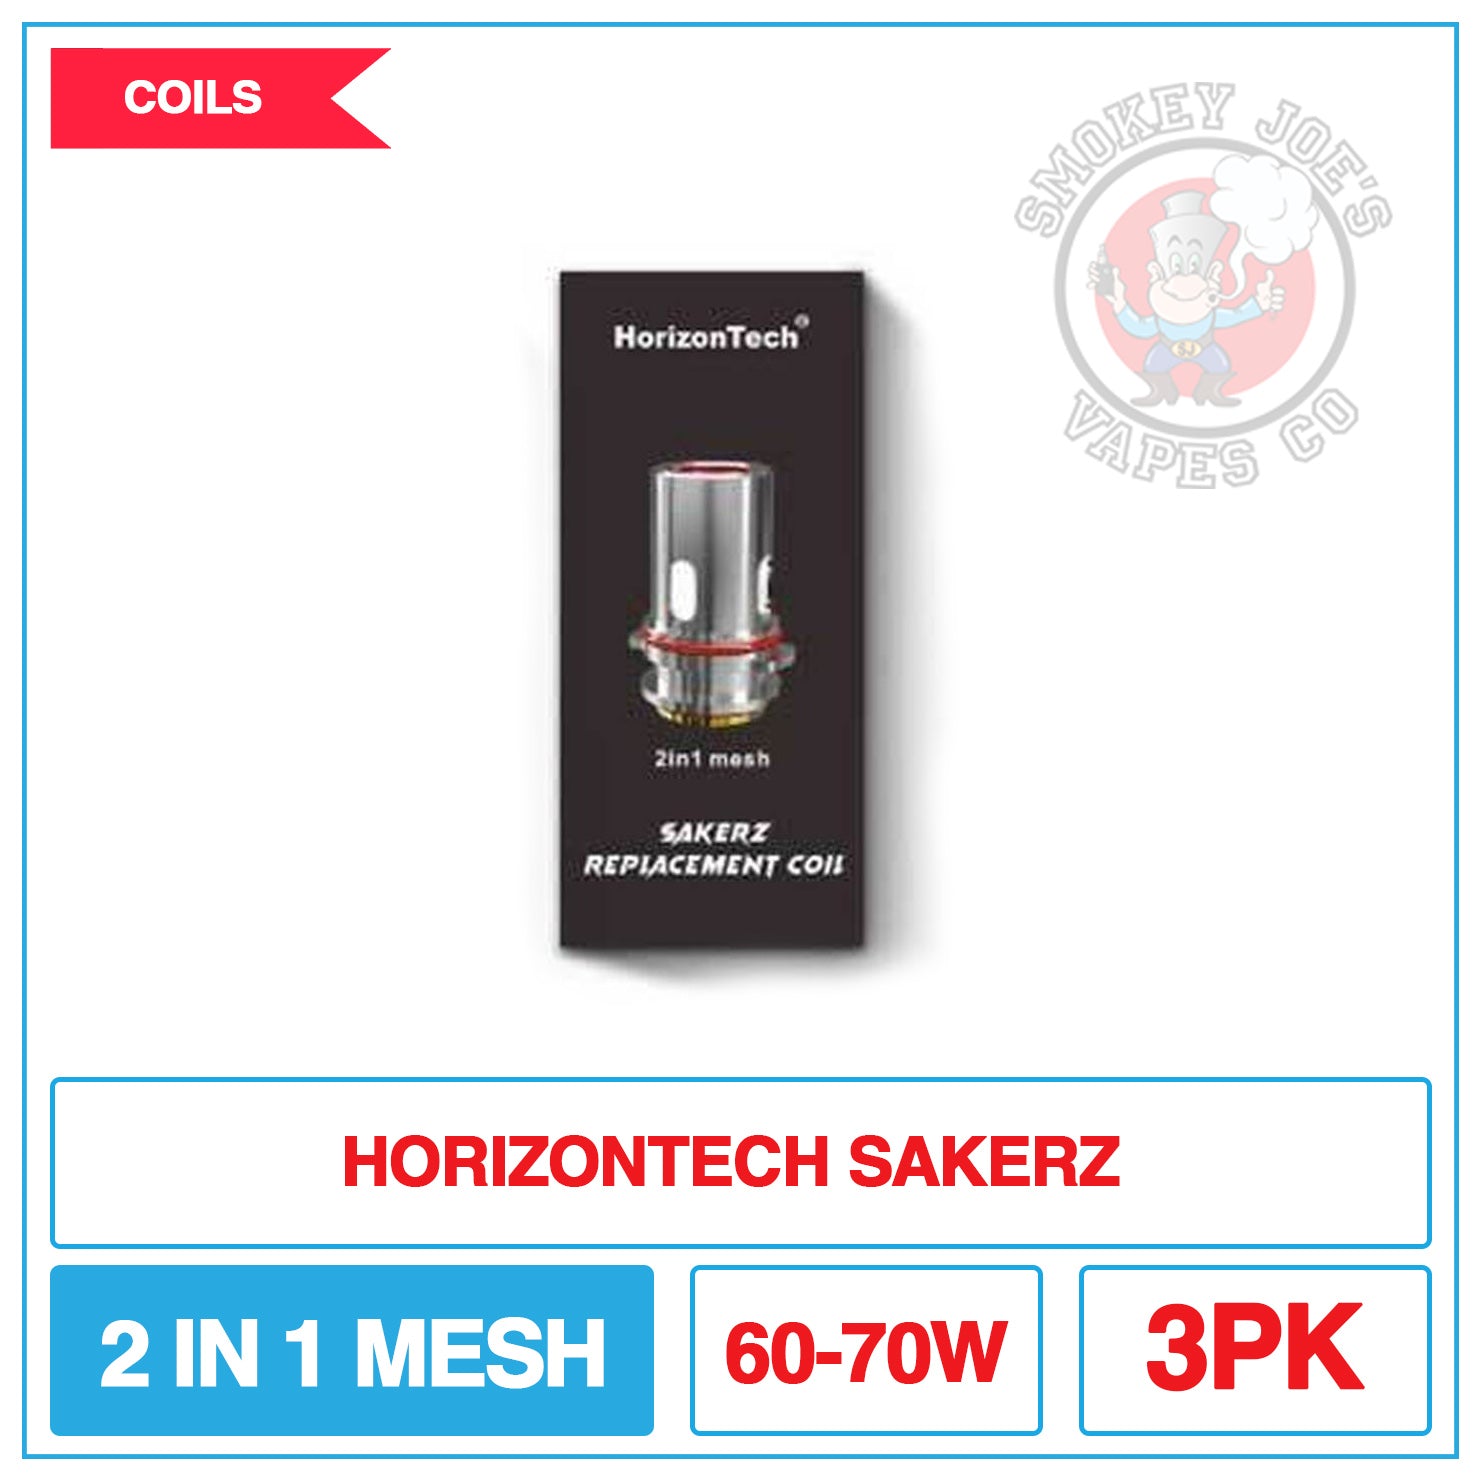 HorizonTech - Sakerz Replacement Coils |  Smokey Joes Vapes Co.